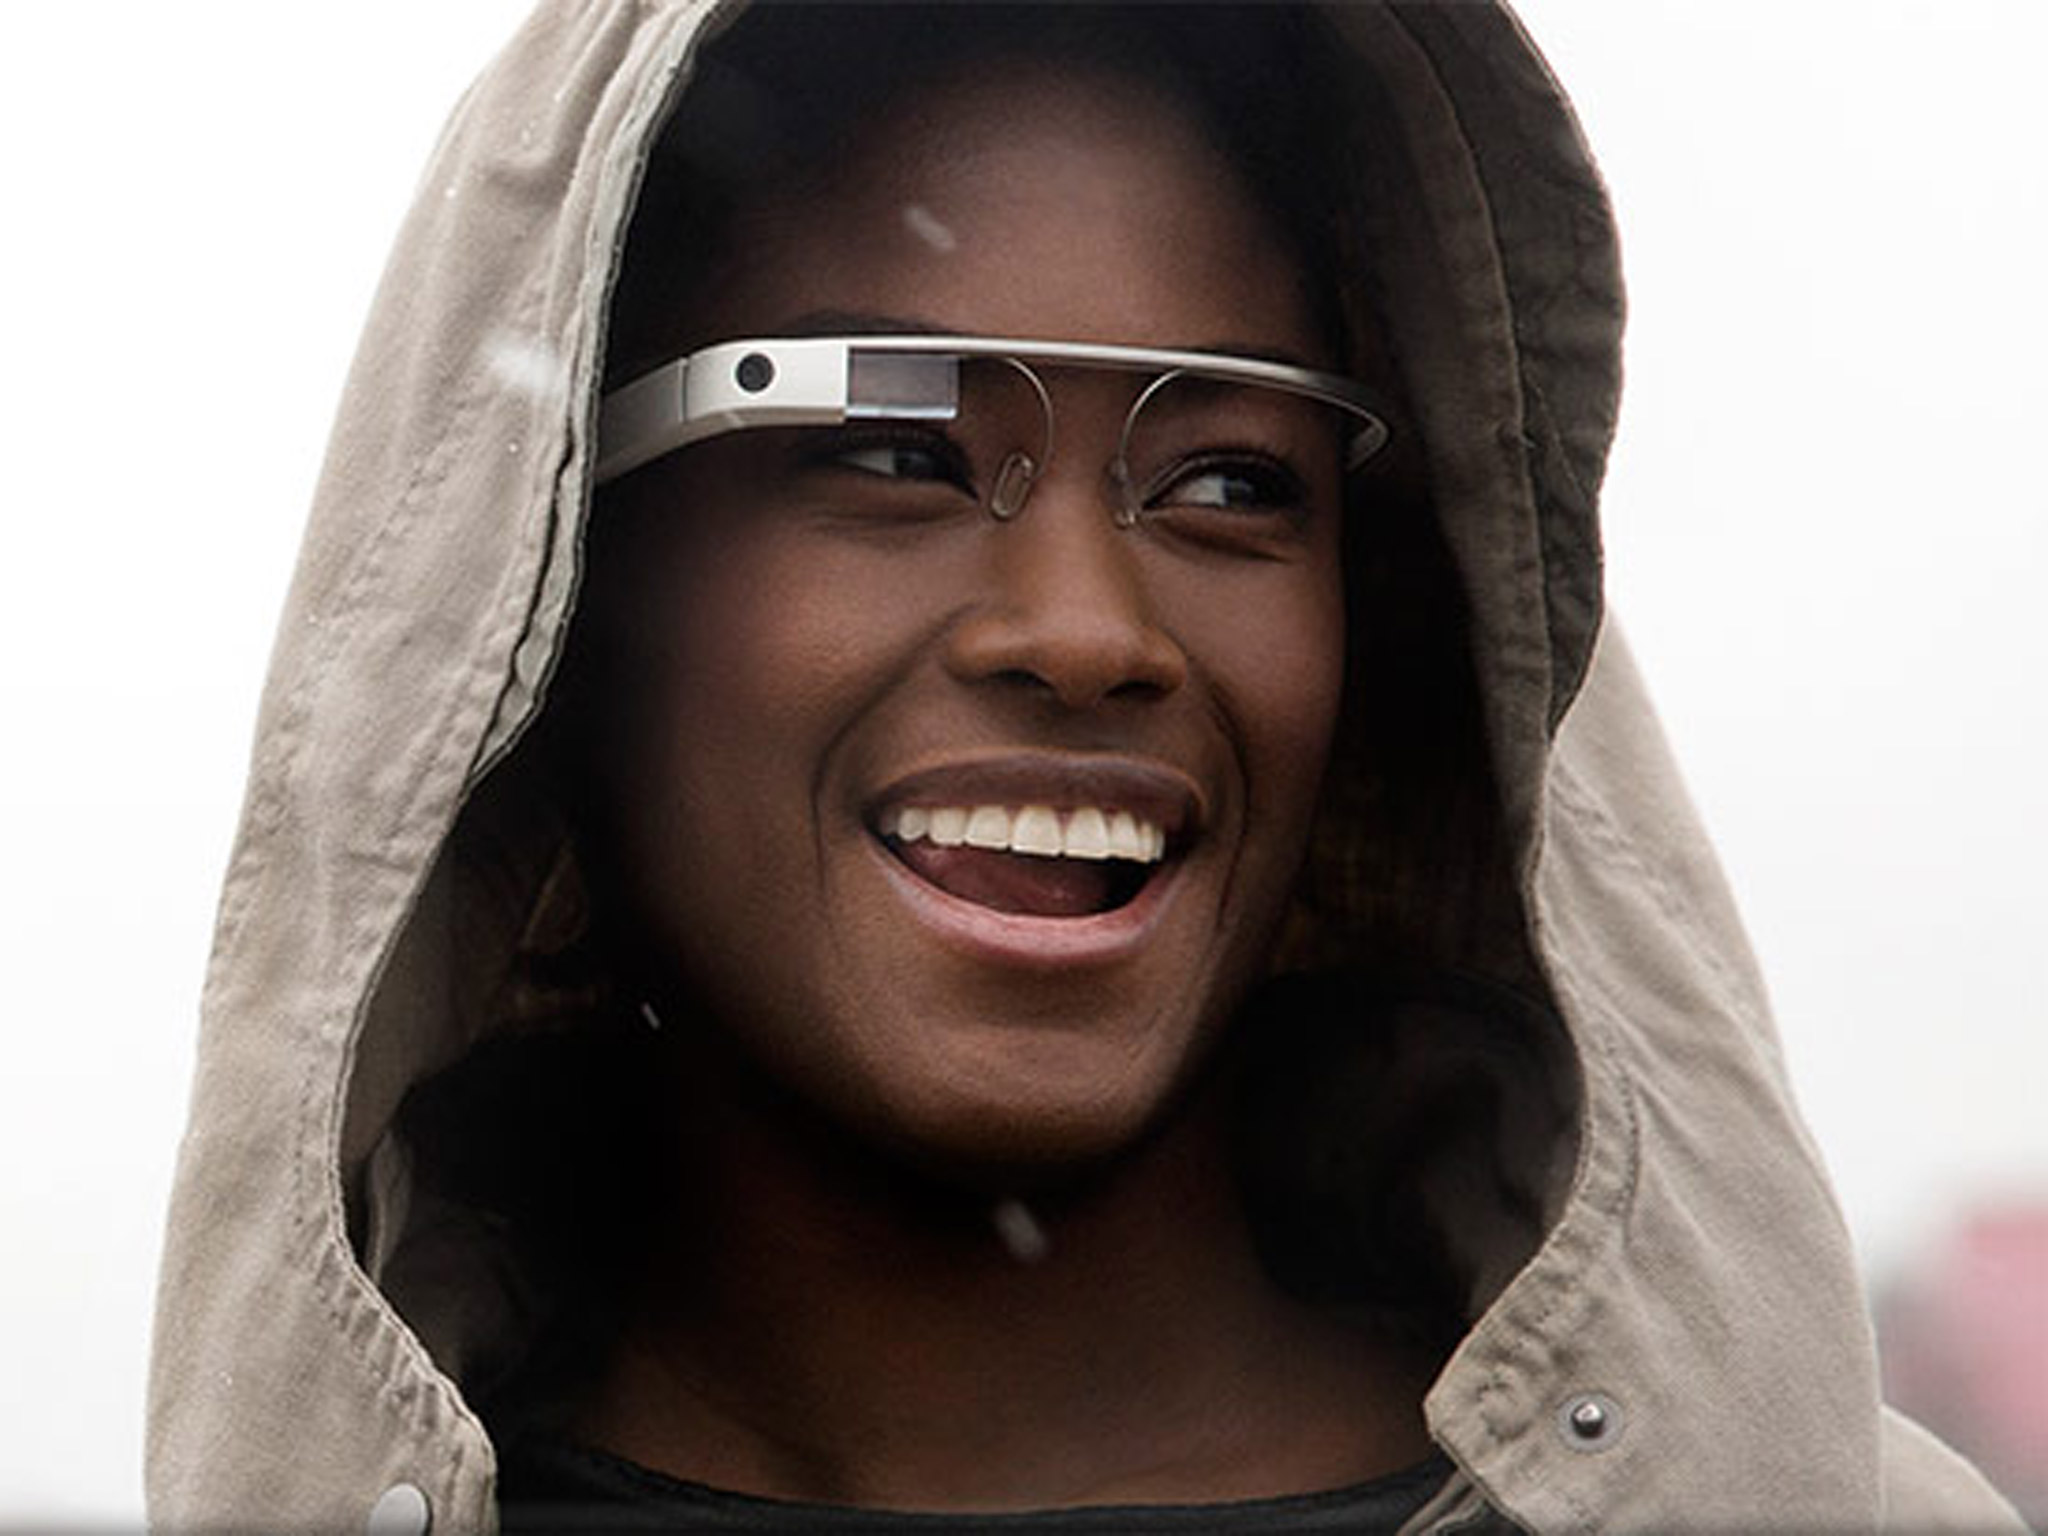 teknolojide son noktayı koyan Google Glass Türkiye’de